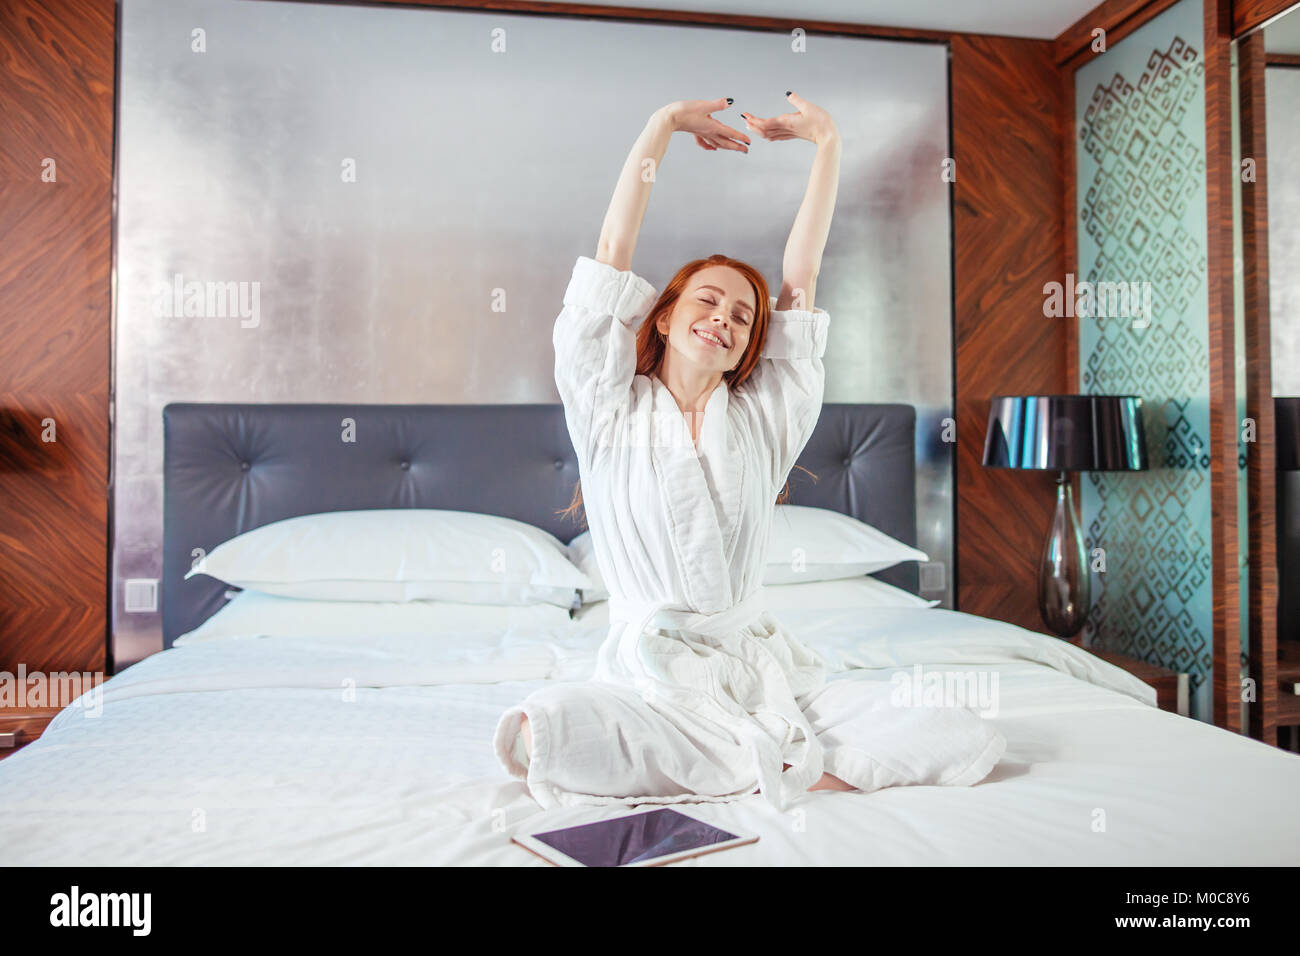 Rothaarige Frau Stretching im Bett nach dem Aufwachen Stockfotografie -  Alamy